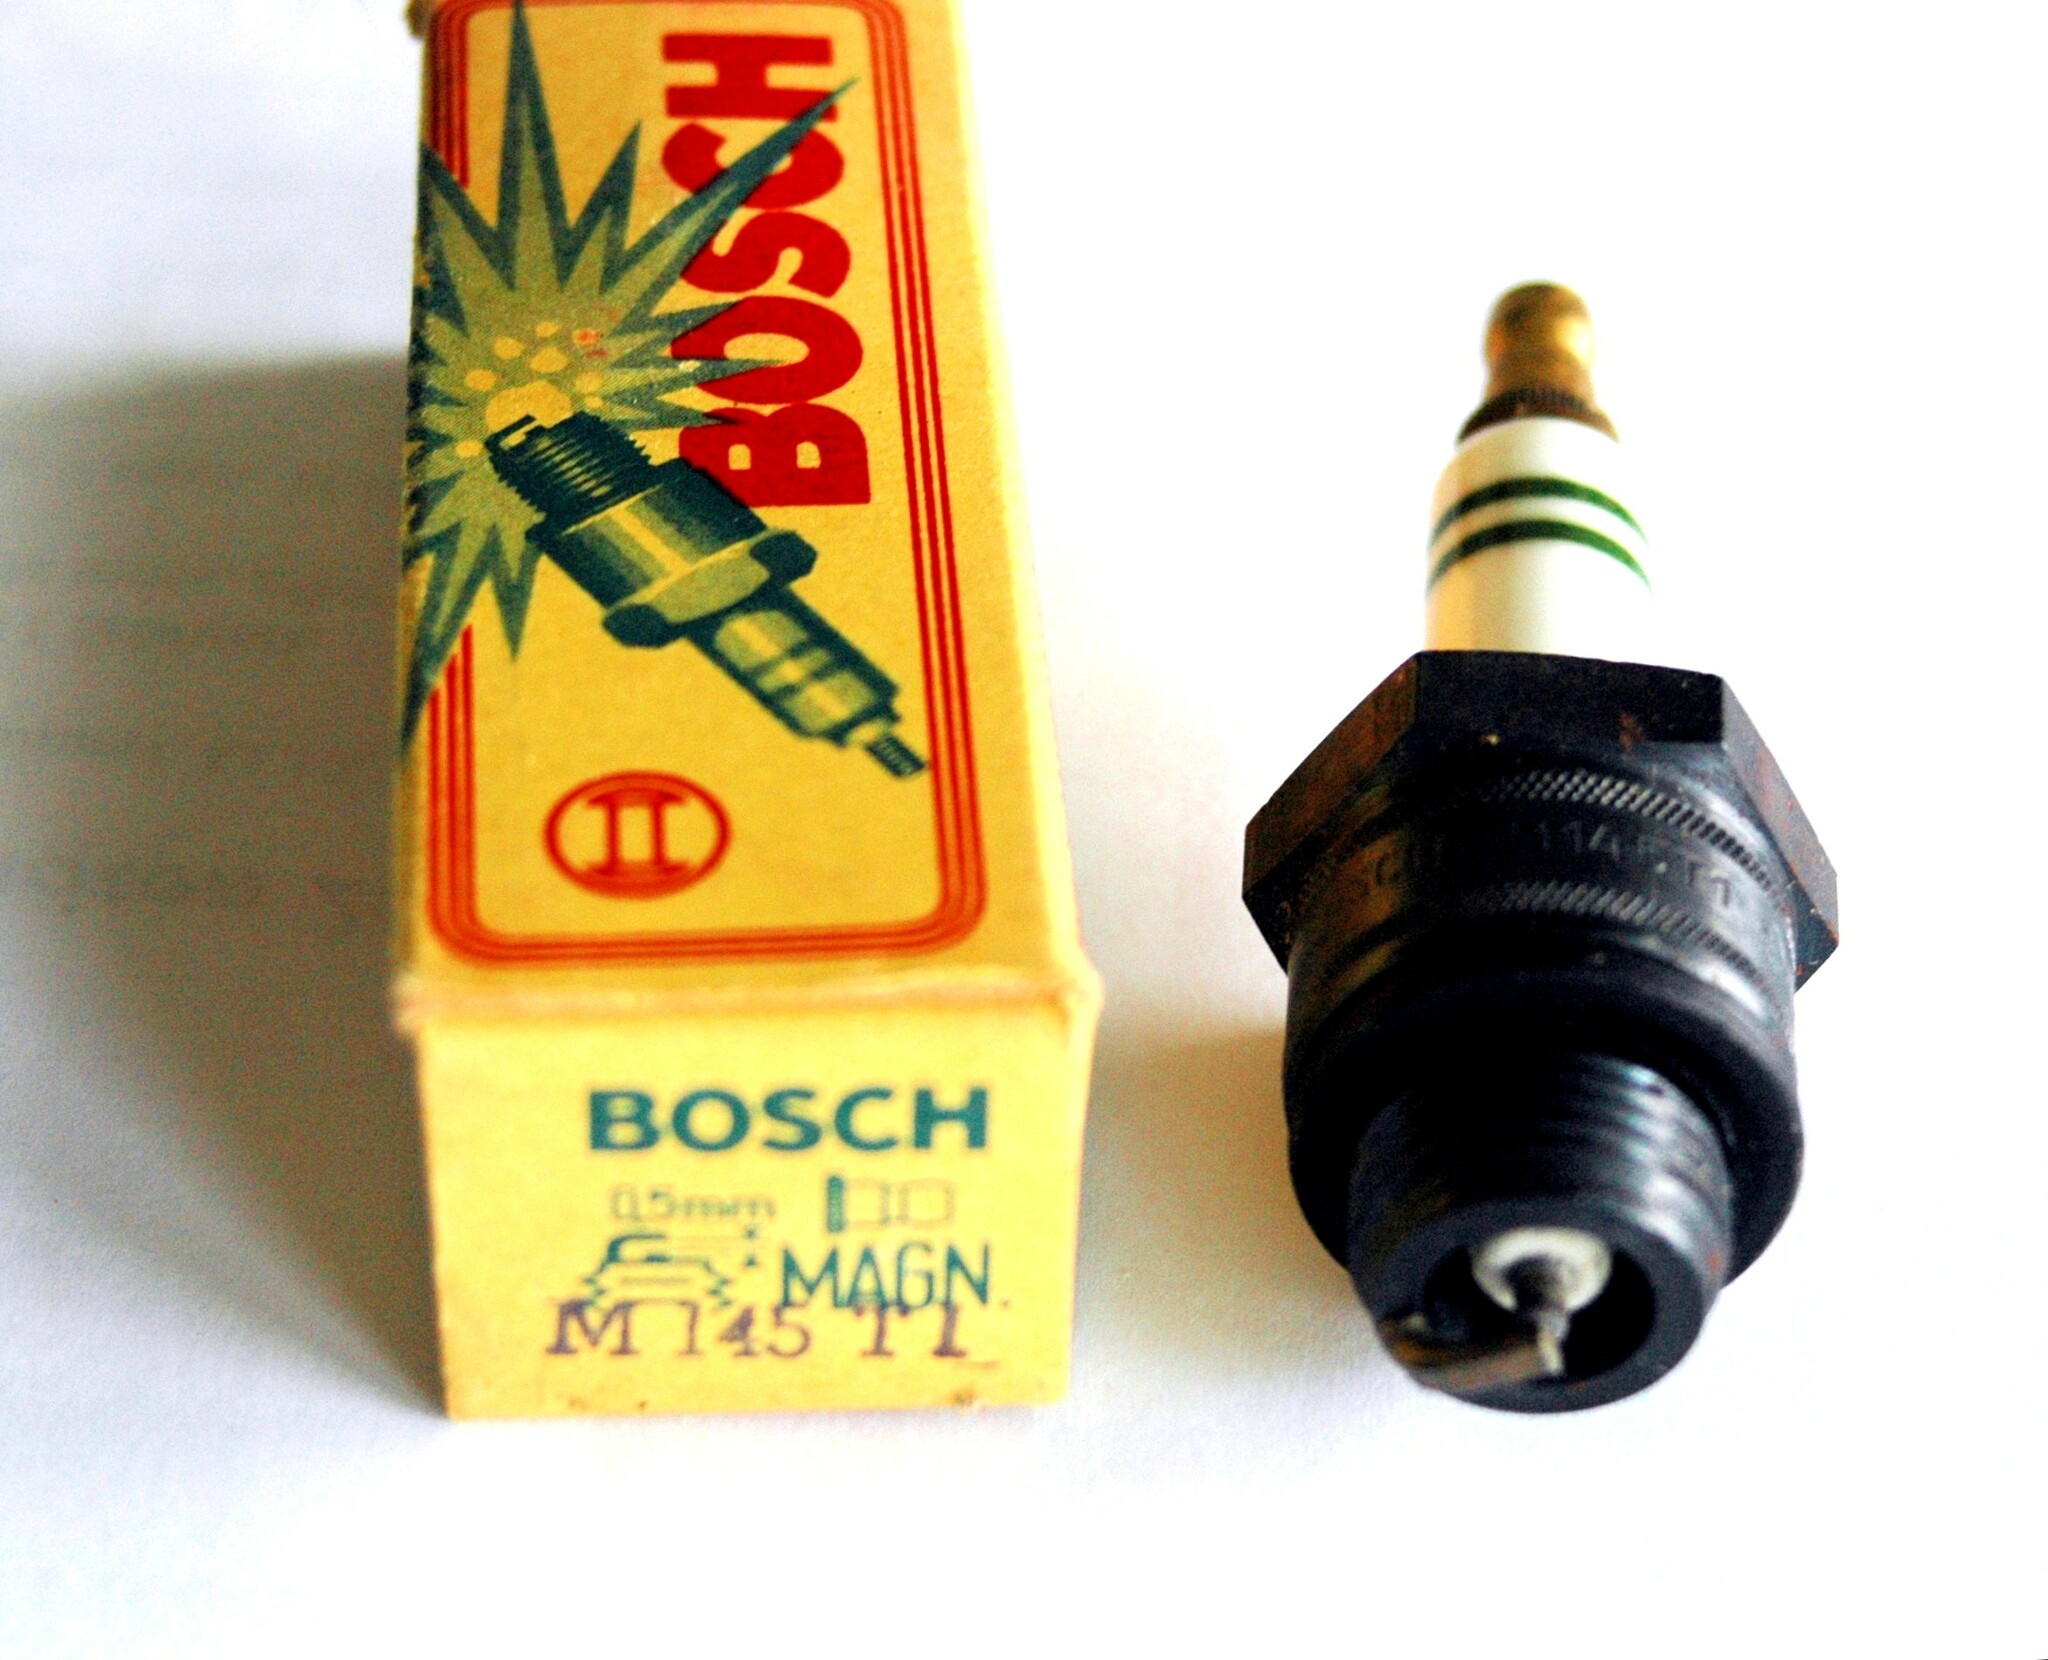 Bosch M145T1, NOS